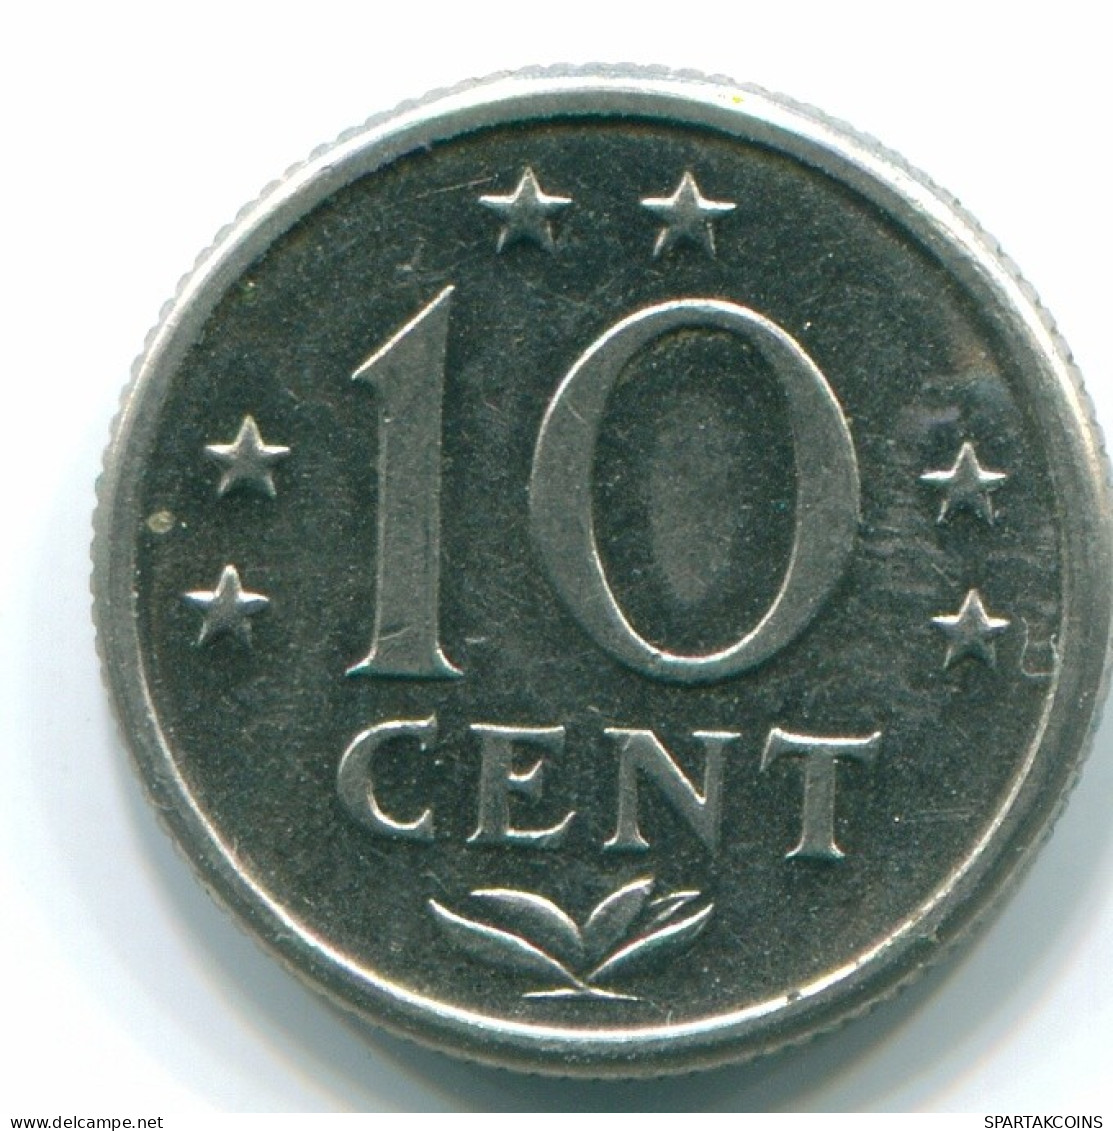 10 CENTS 1974 NIEDERLÄNDISCHE ANTILLEN Nickel Koloniale Münze #S13502.D.A - Niederländische Antillen